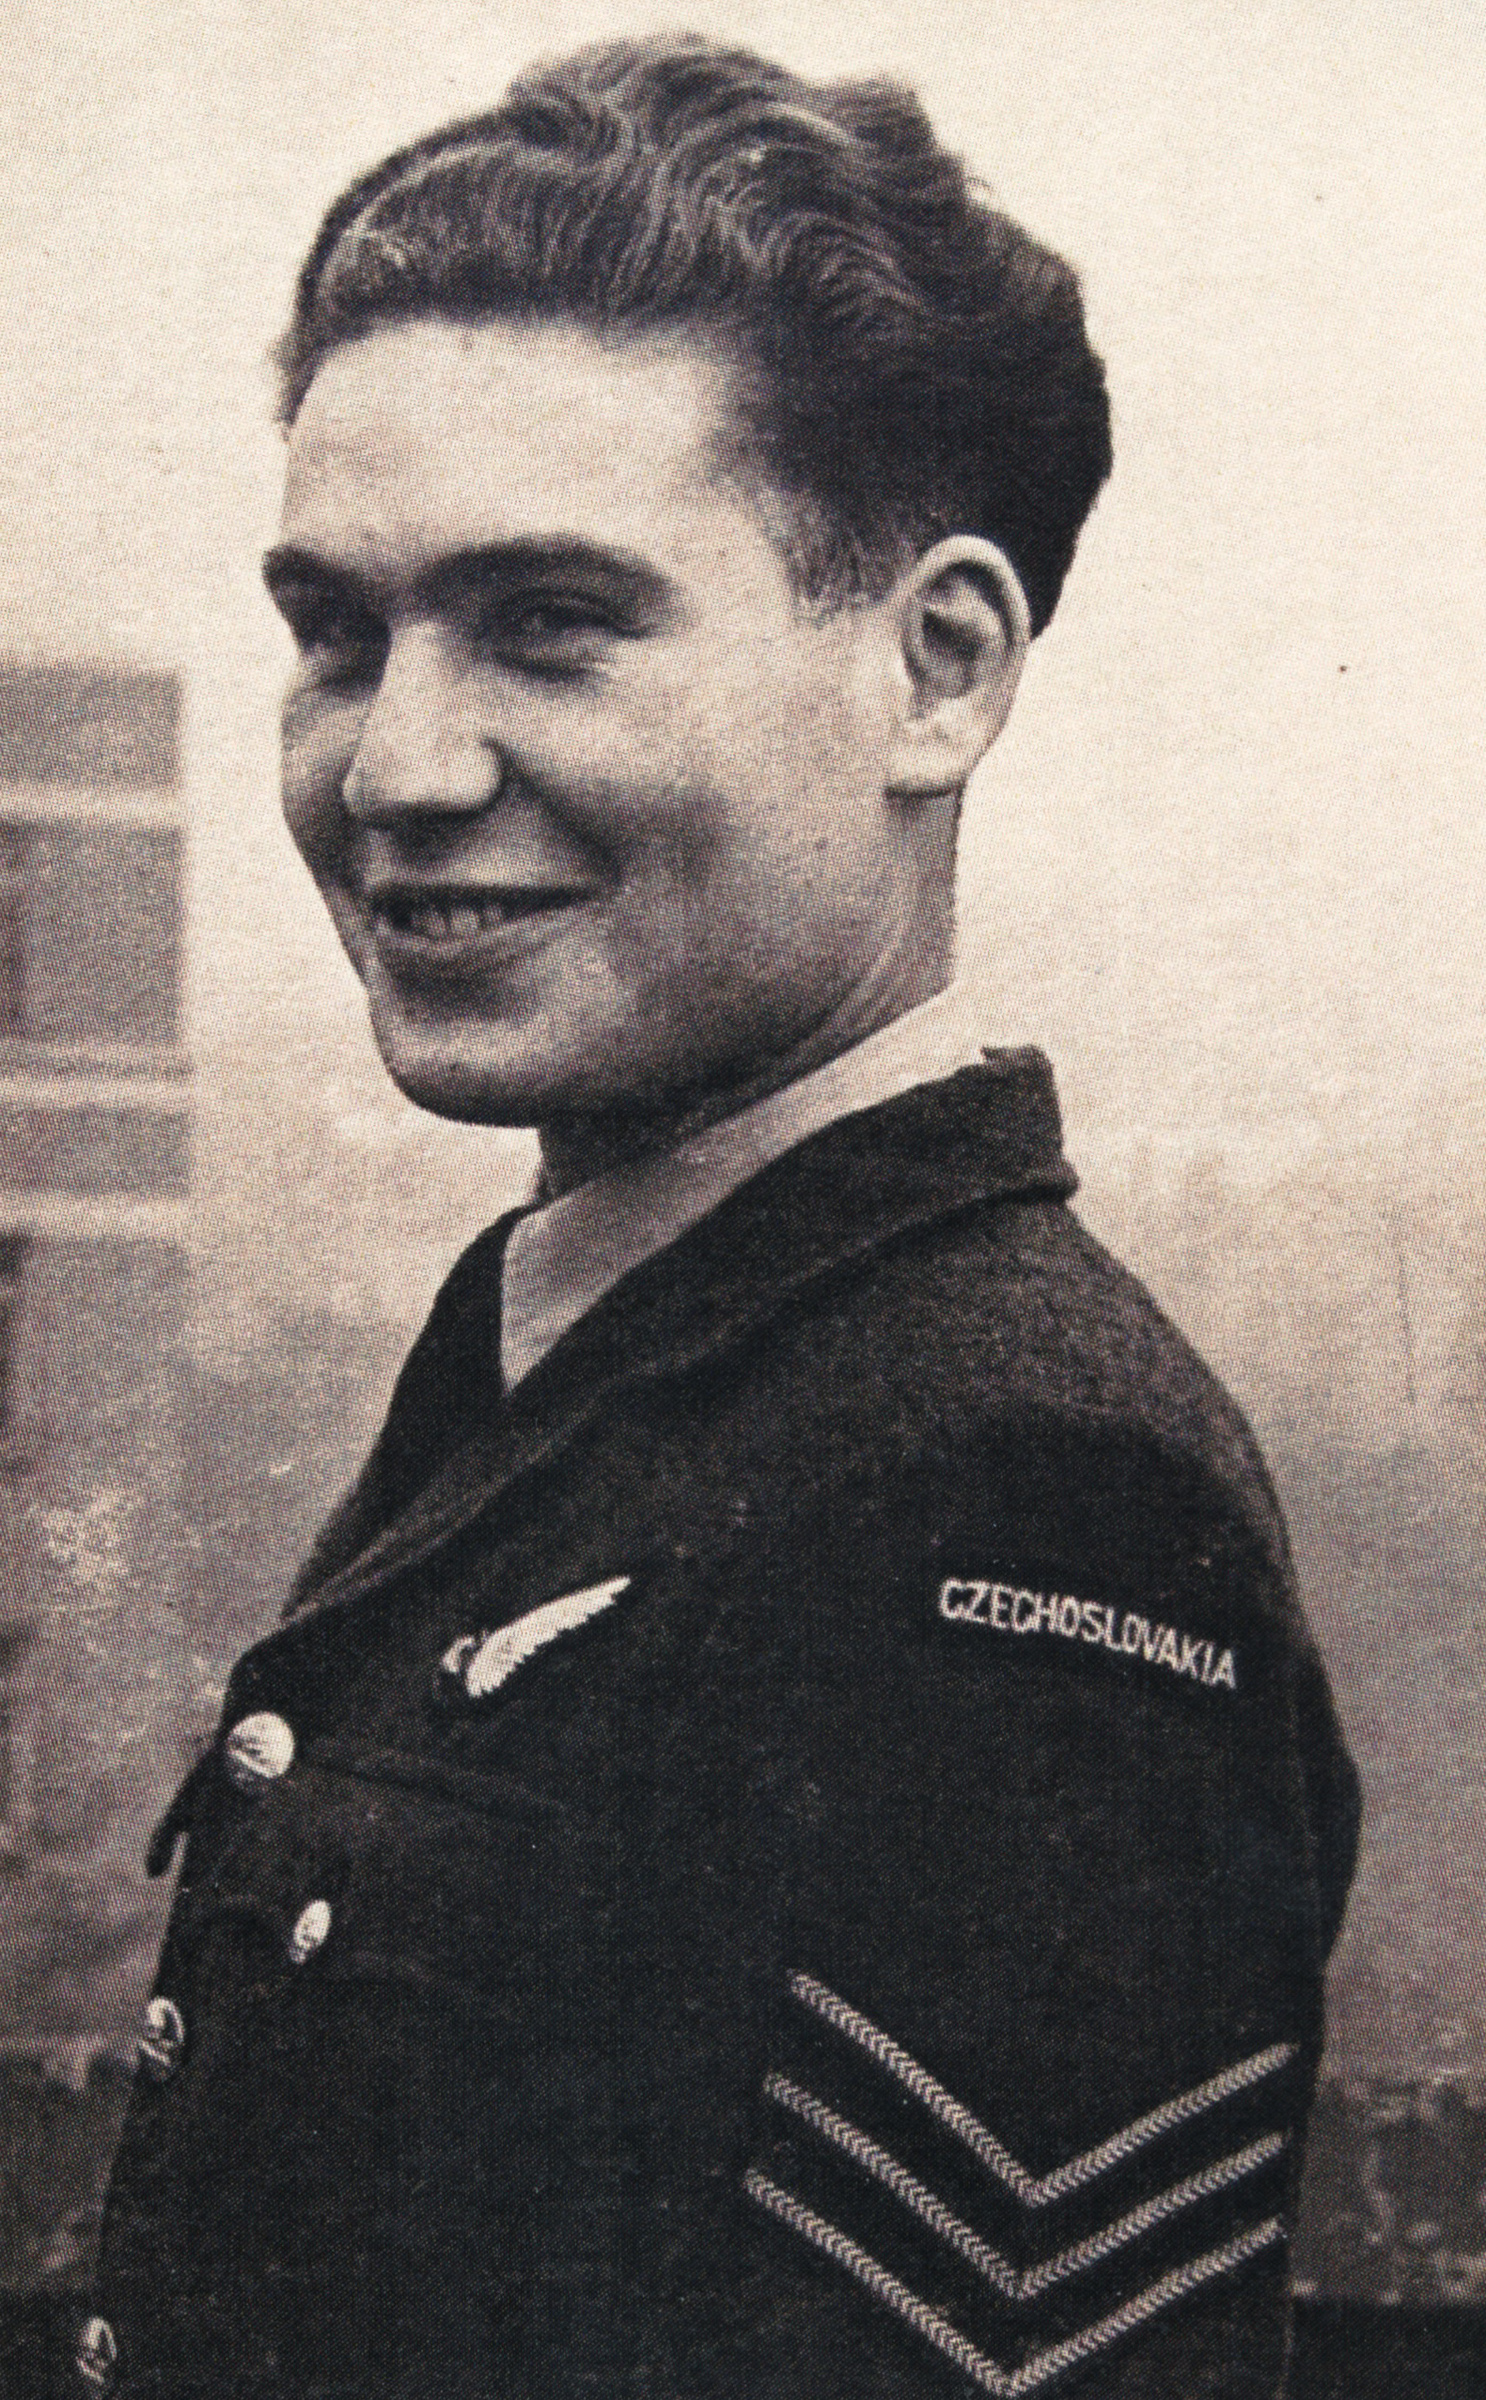 Jiří Kafka as a RAF pilot